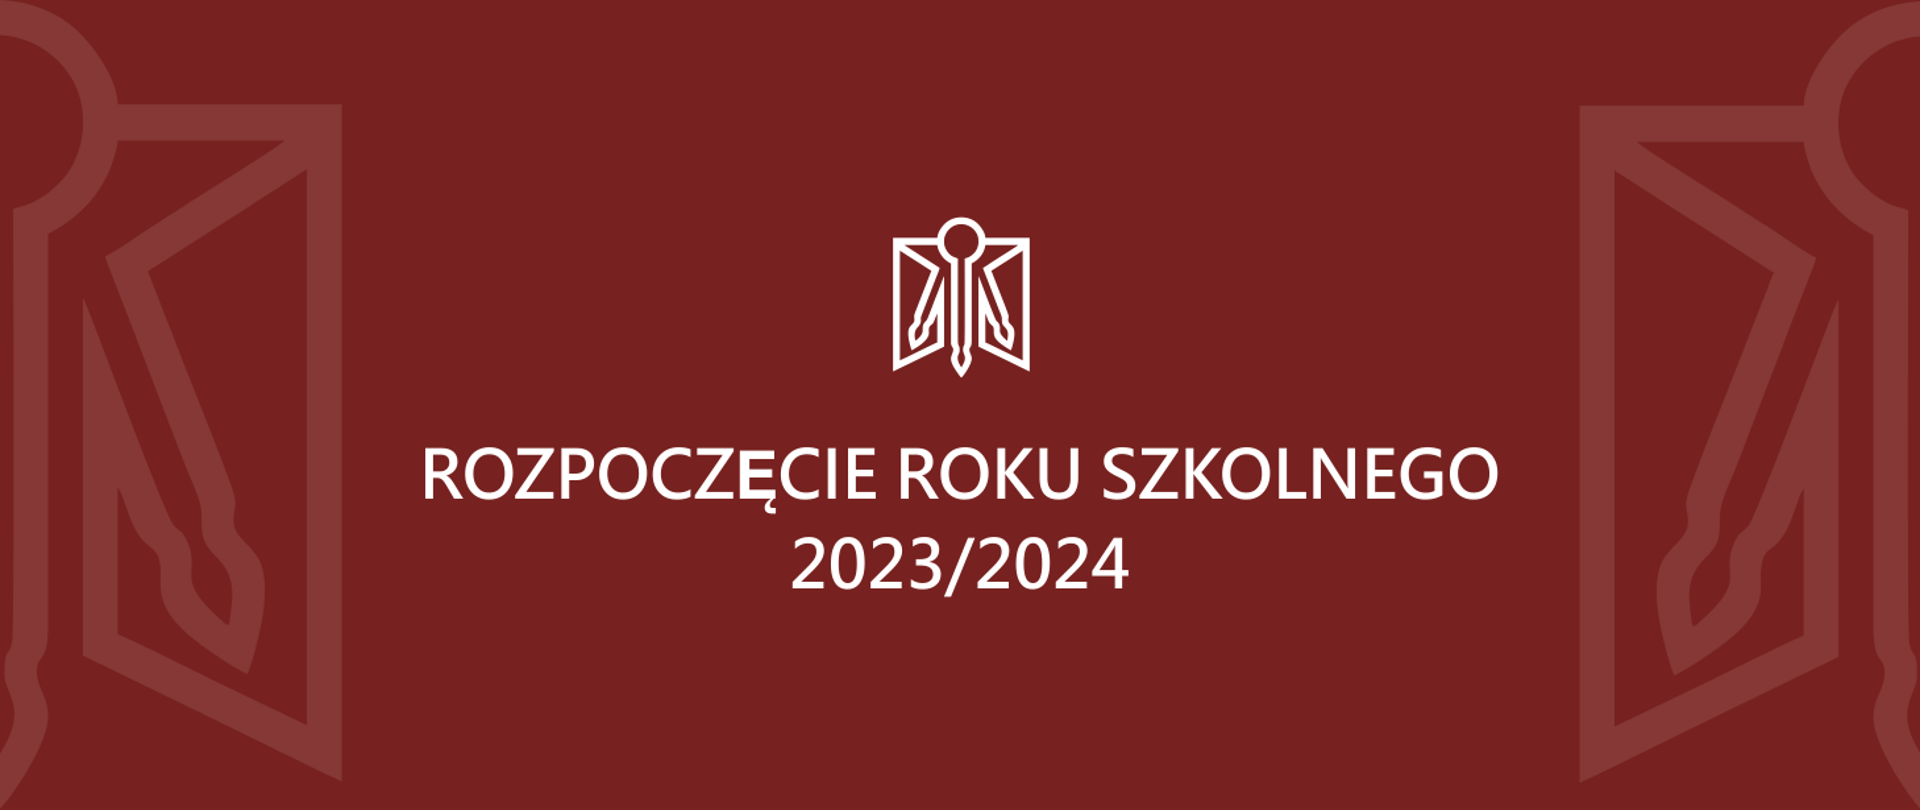 Grafika przedstawia, na środku biały symbol, którego forma stanowi połączenie otwartych skrzydeł okiennych i trzech pędzli malarskich oraz oraz biały napis rozpoczęcie roku szkolnego 2023/2024, po lewej i prawej część symbolu wtapiającego się w ciemnoczerwone tło. 